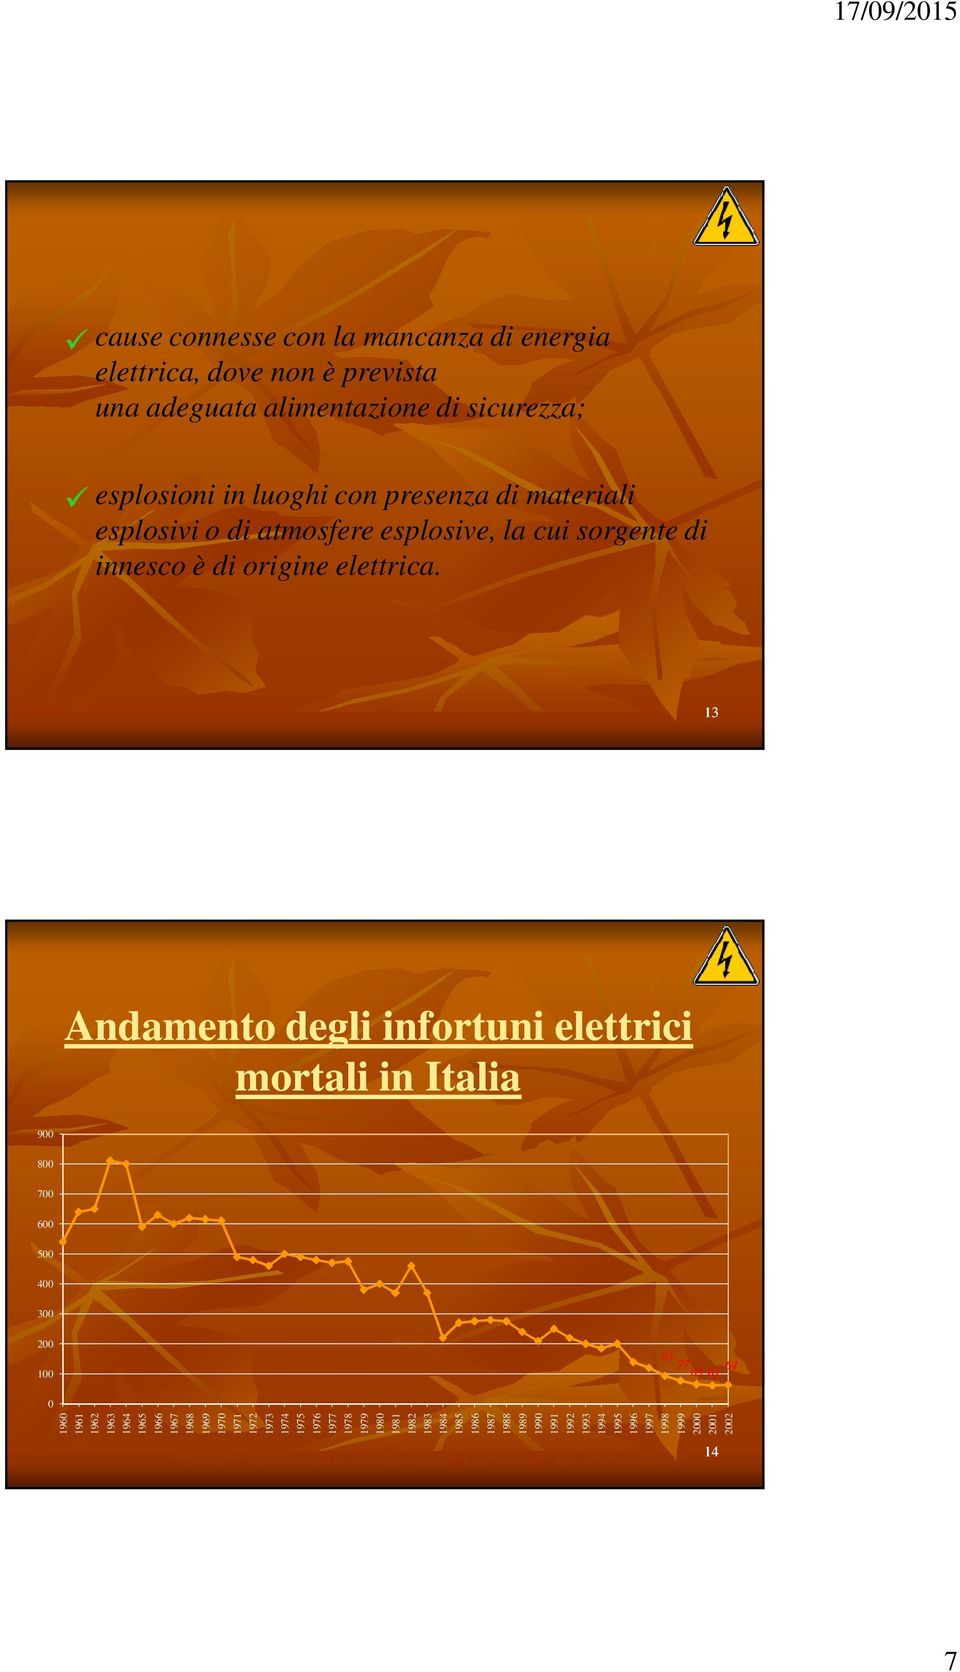 13 Andamento degli infortuni elettrici mortali in Italia 900 800 700 600 500 400 300 200 100 93 7765 64 65 61 0 1960 1961 1962 1963 1964 1965 1966 1967 1968